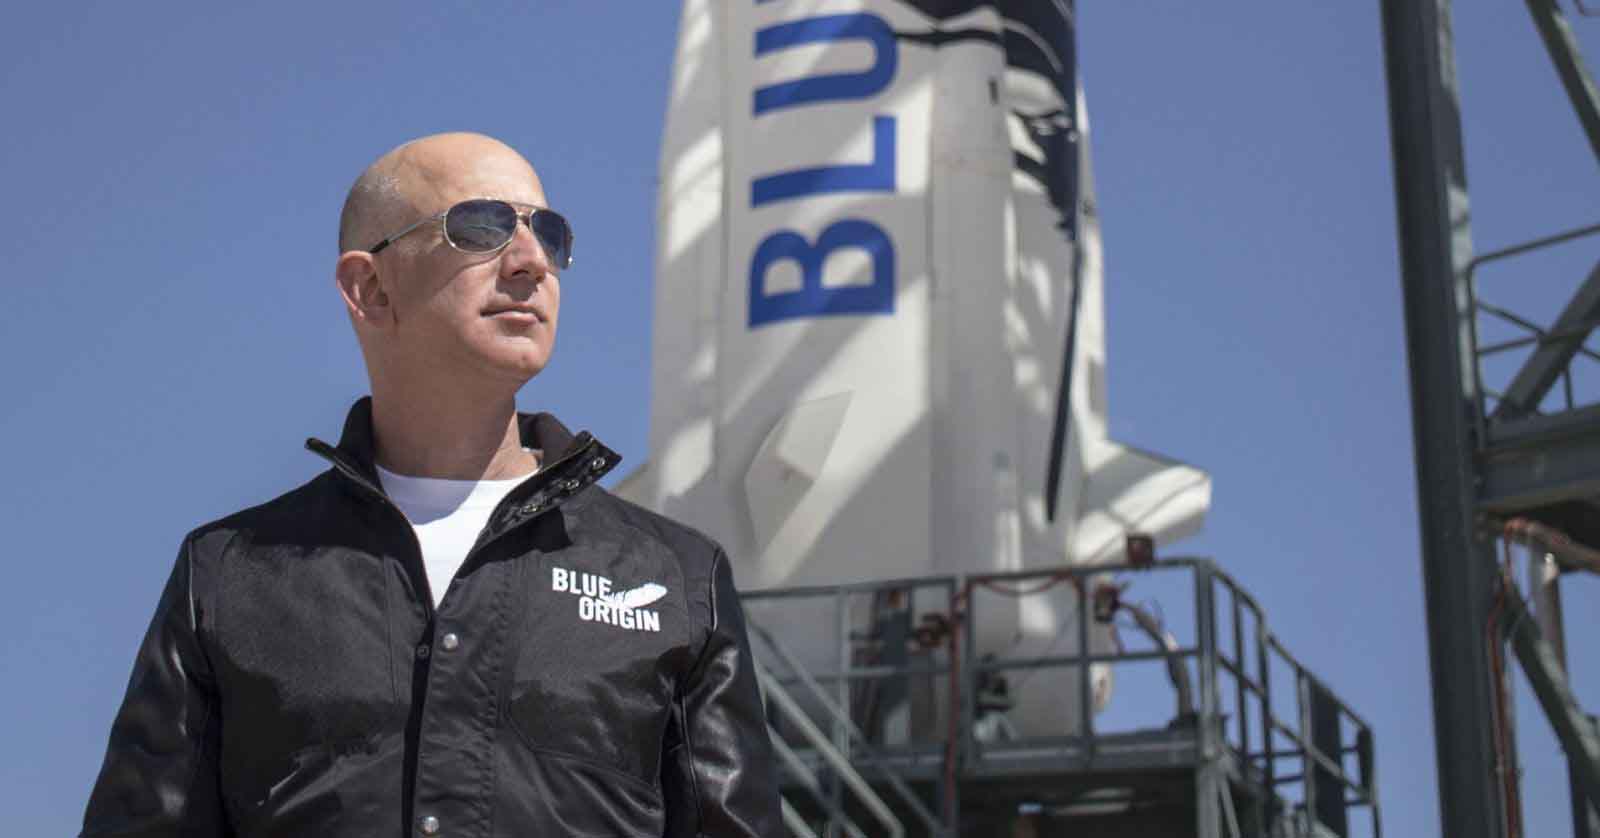 Tỉ phú Jeff Bezos thu phí gần 5 tỷ đồng cho một chuyến du hành không gian vào năm sau